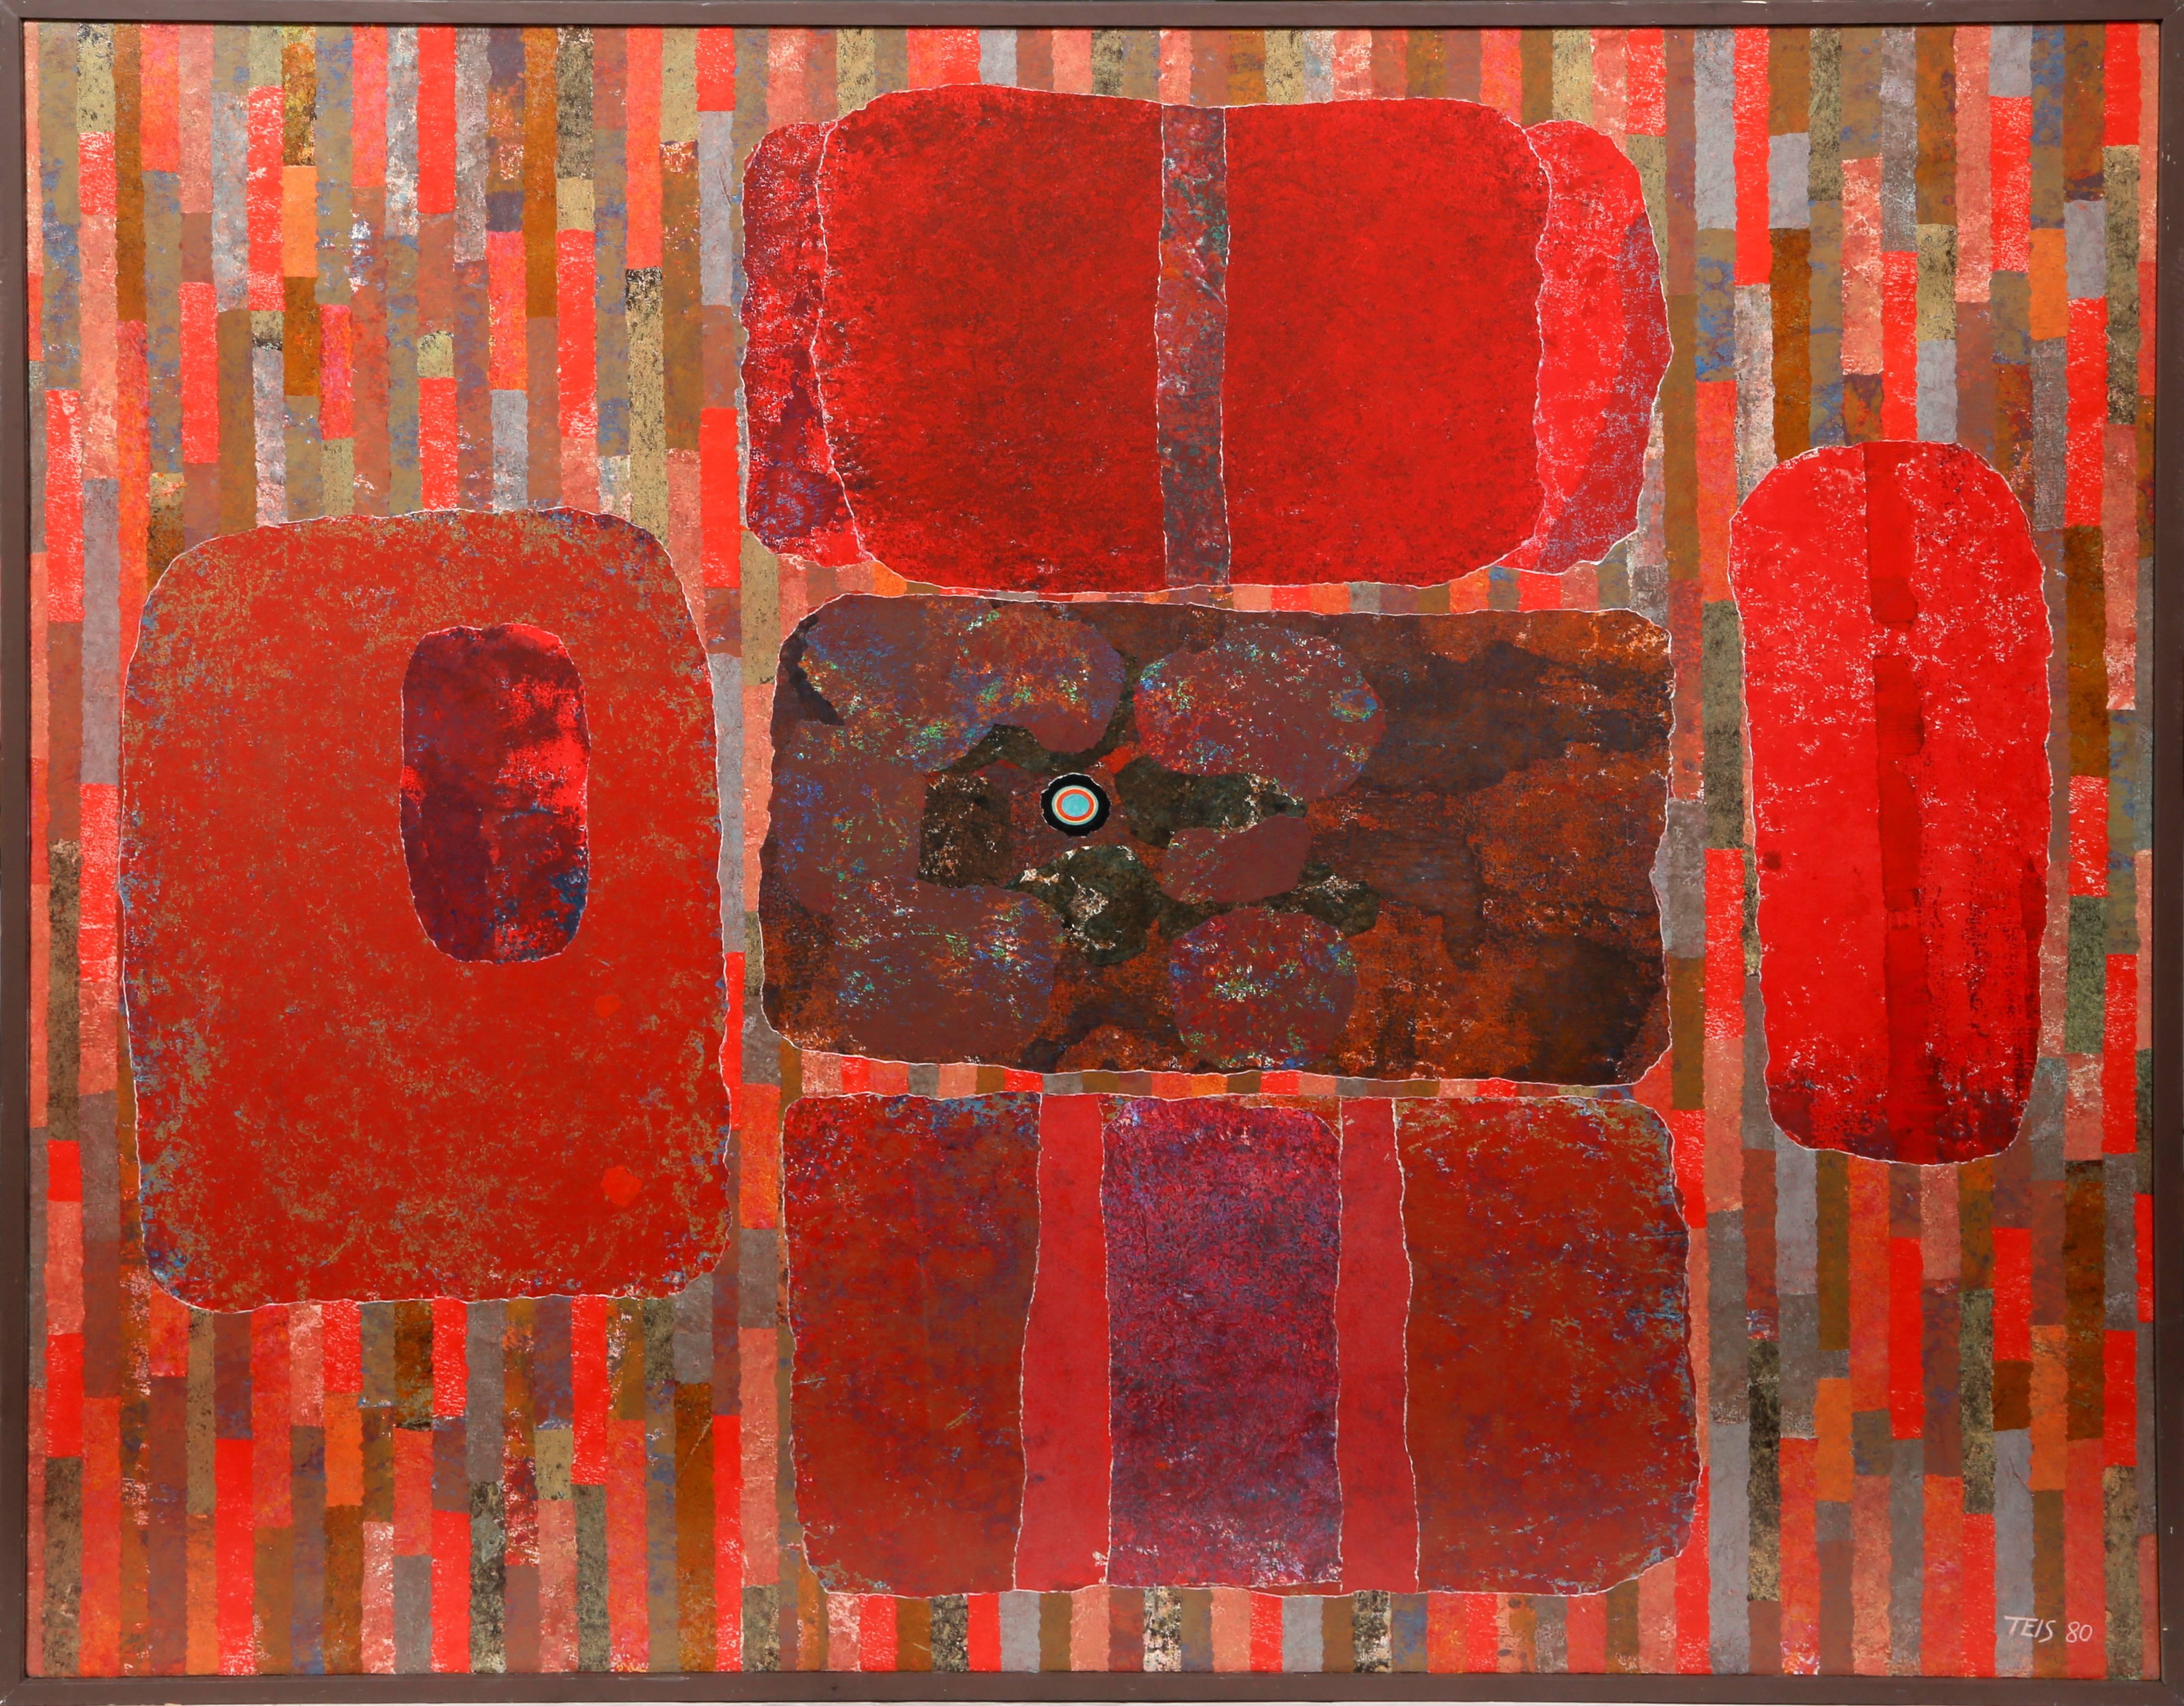 Artiste : Dan Teis
Titre : Abstrait avec des formes rouges
Année : 1980
Medium : Acrylique sur toile, signé à droite.
Taille : 54  x 60 pouces (137,16  x 152,4 cm)
Taille du cadre : 55.5 x 61.75 pouces
